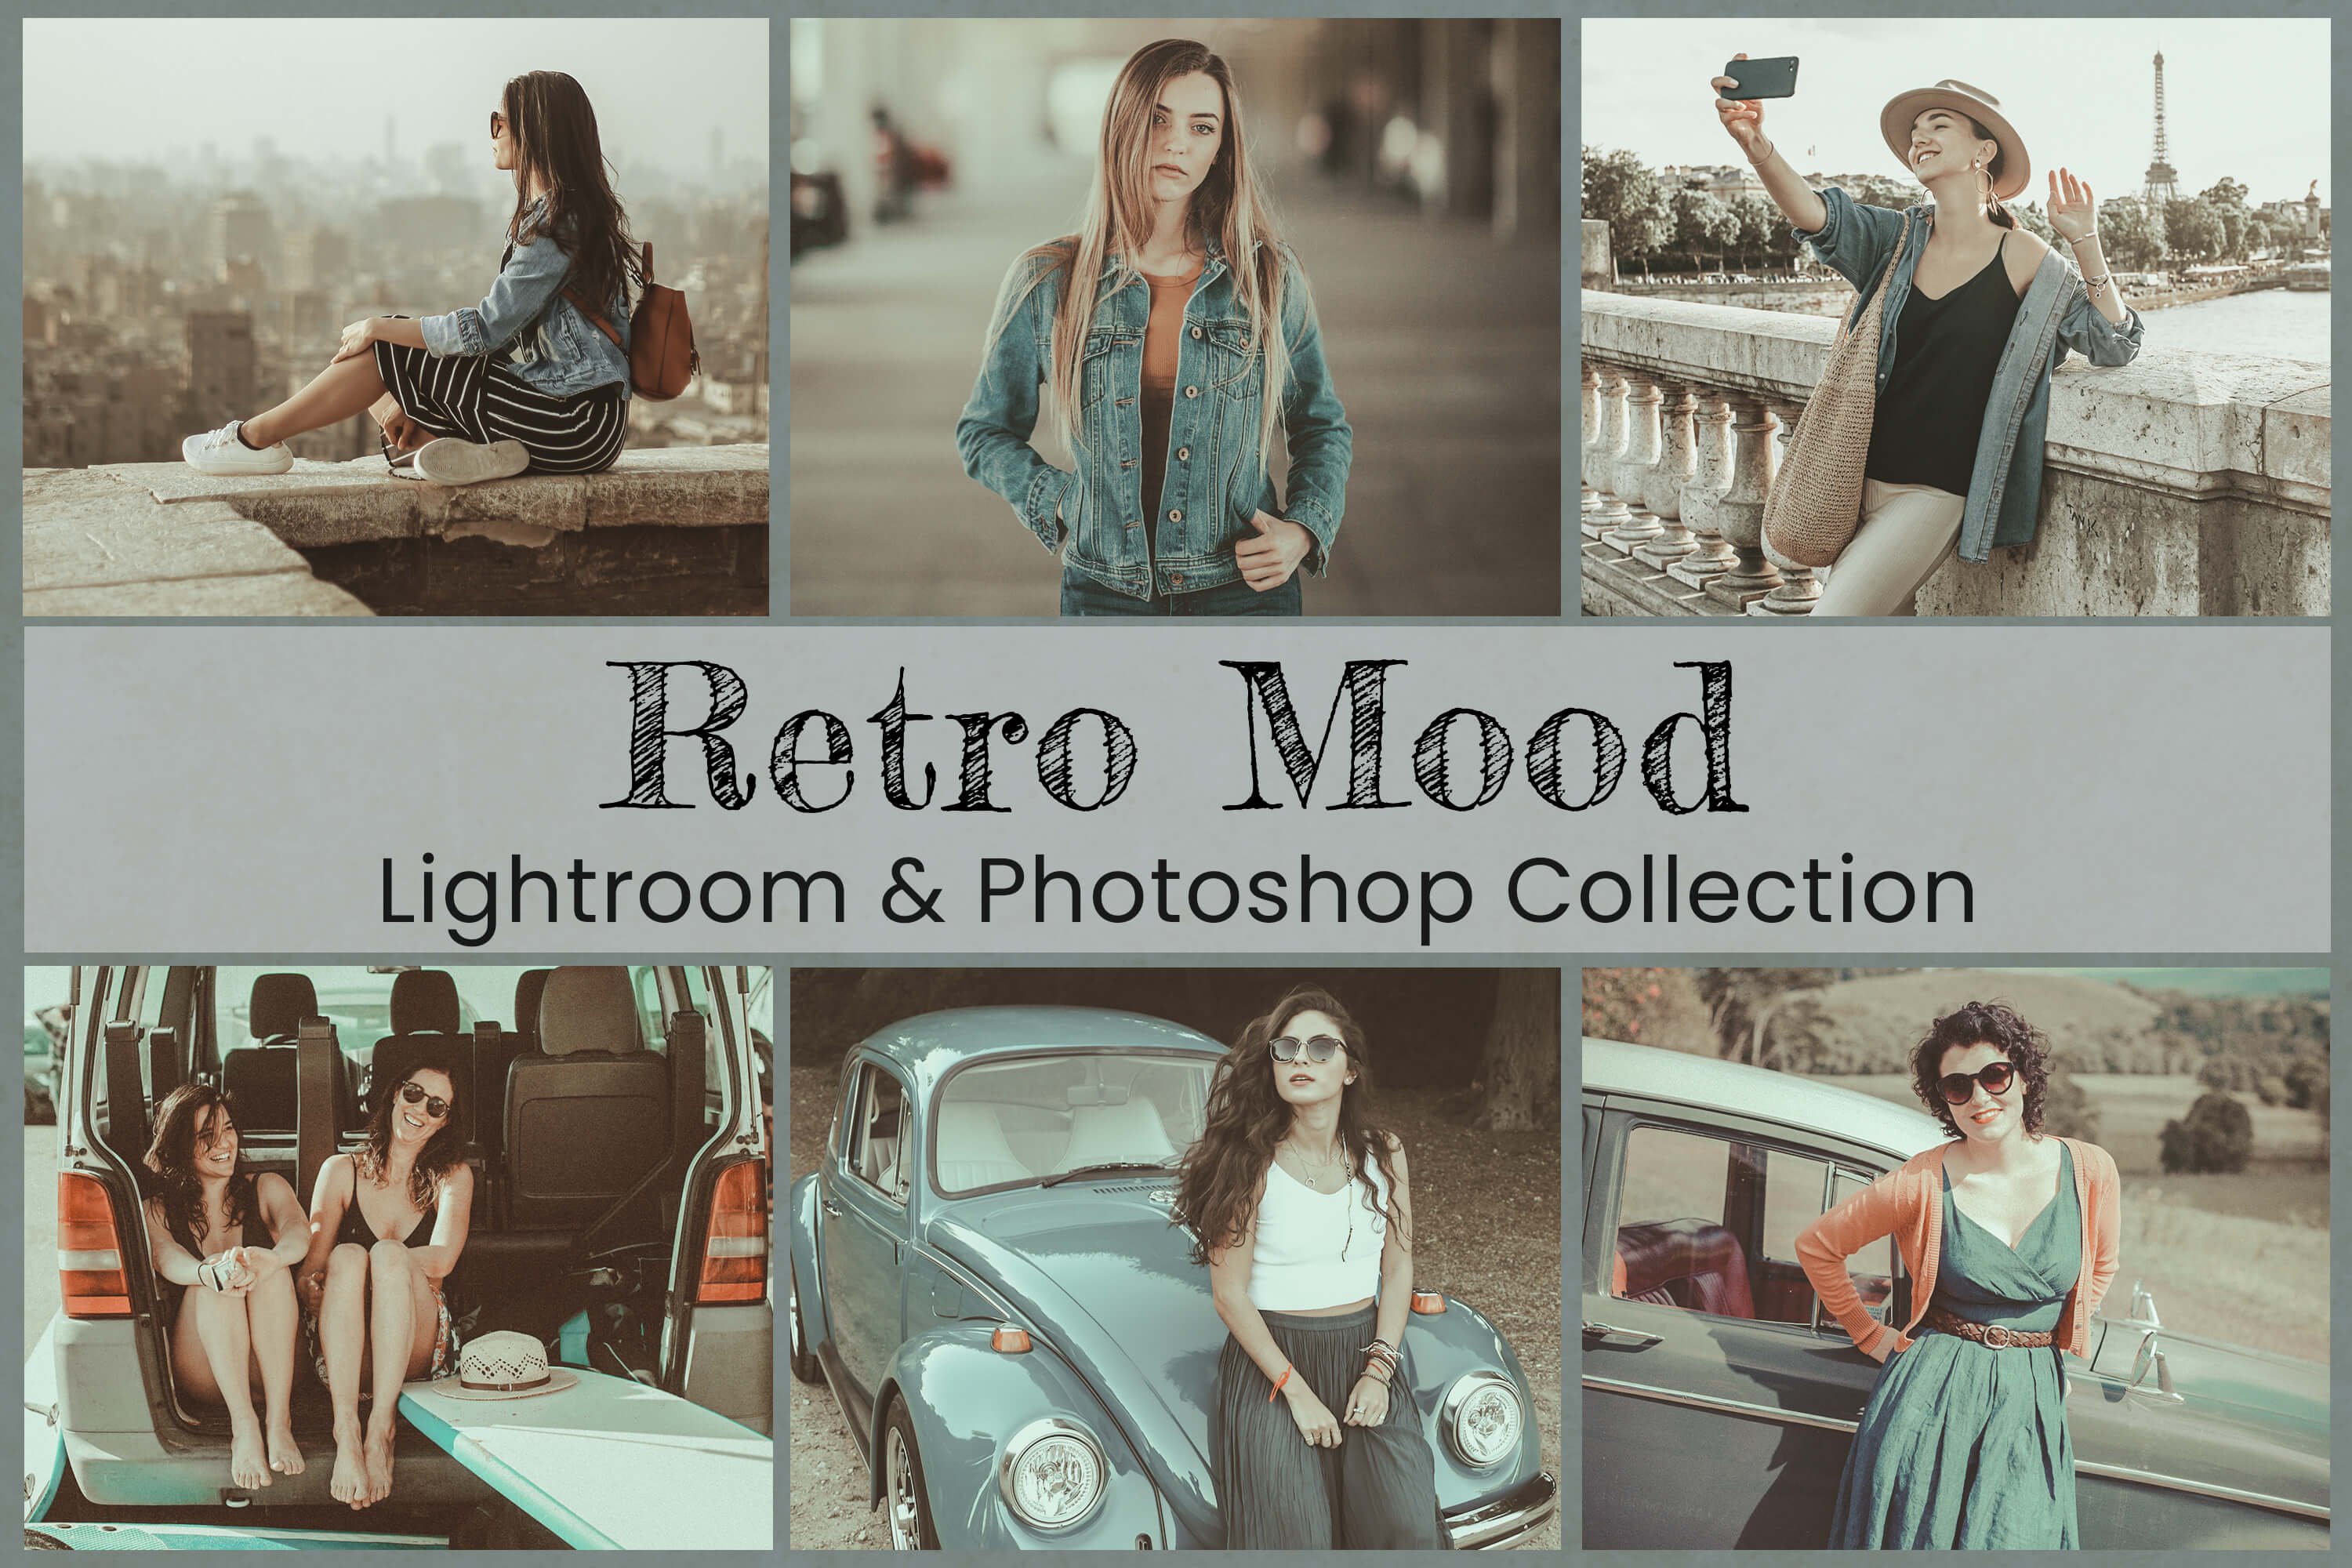 Retro Lightroom Photoshop Preset LUT 6390122